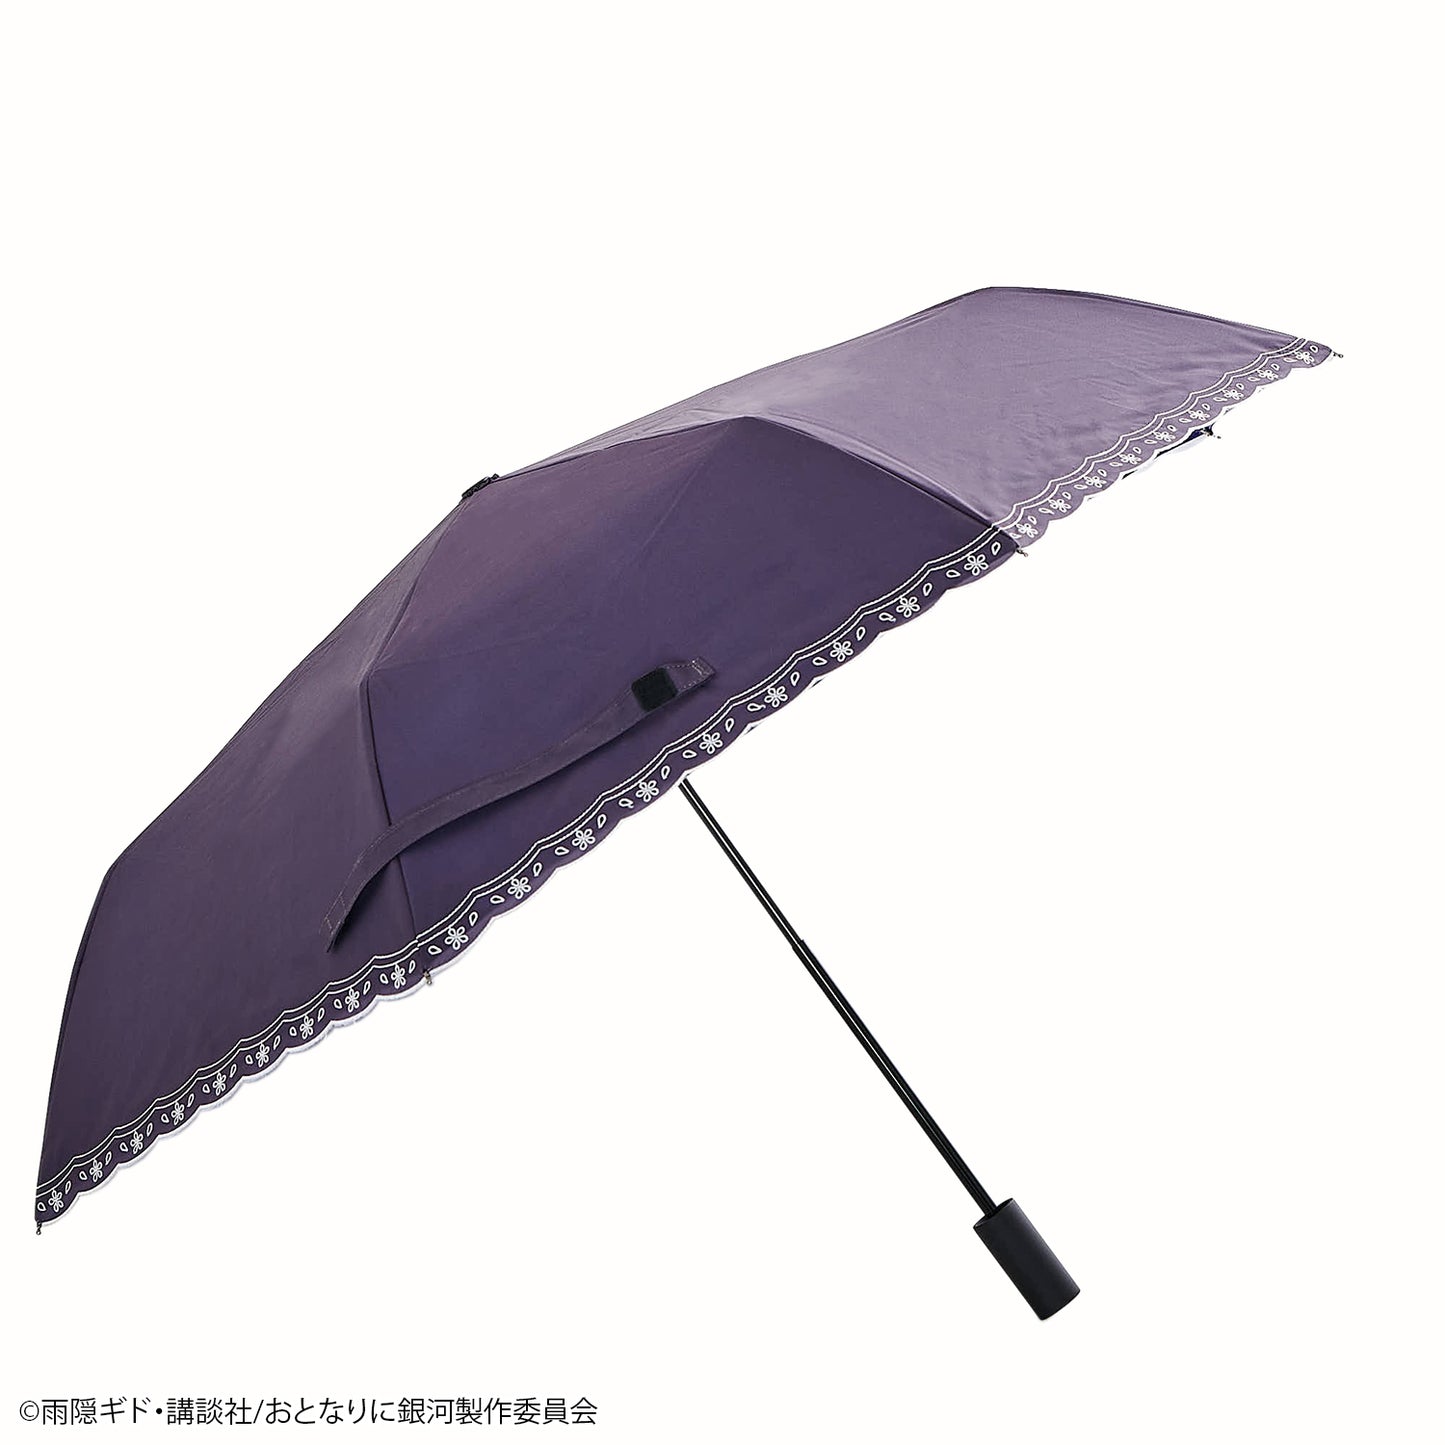 『おとなりに銀河』UVカット機能付き晴雨兼用折りたたみ傘【予約商品】